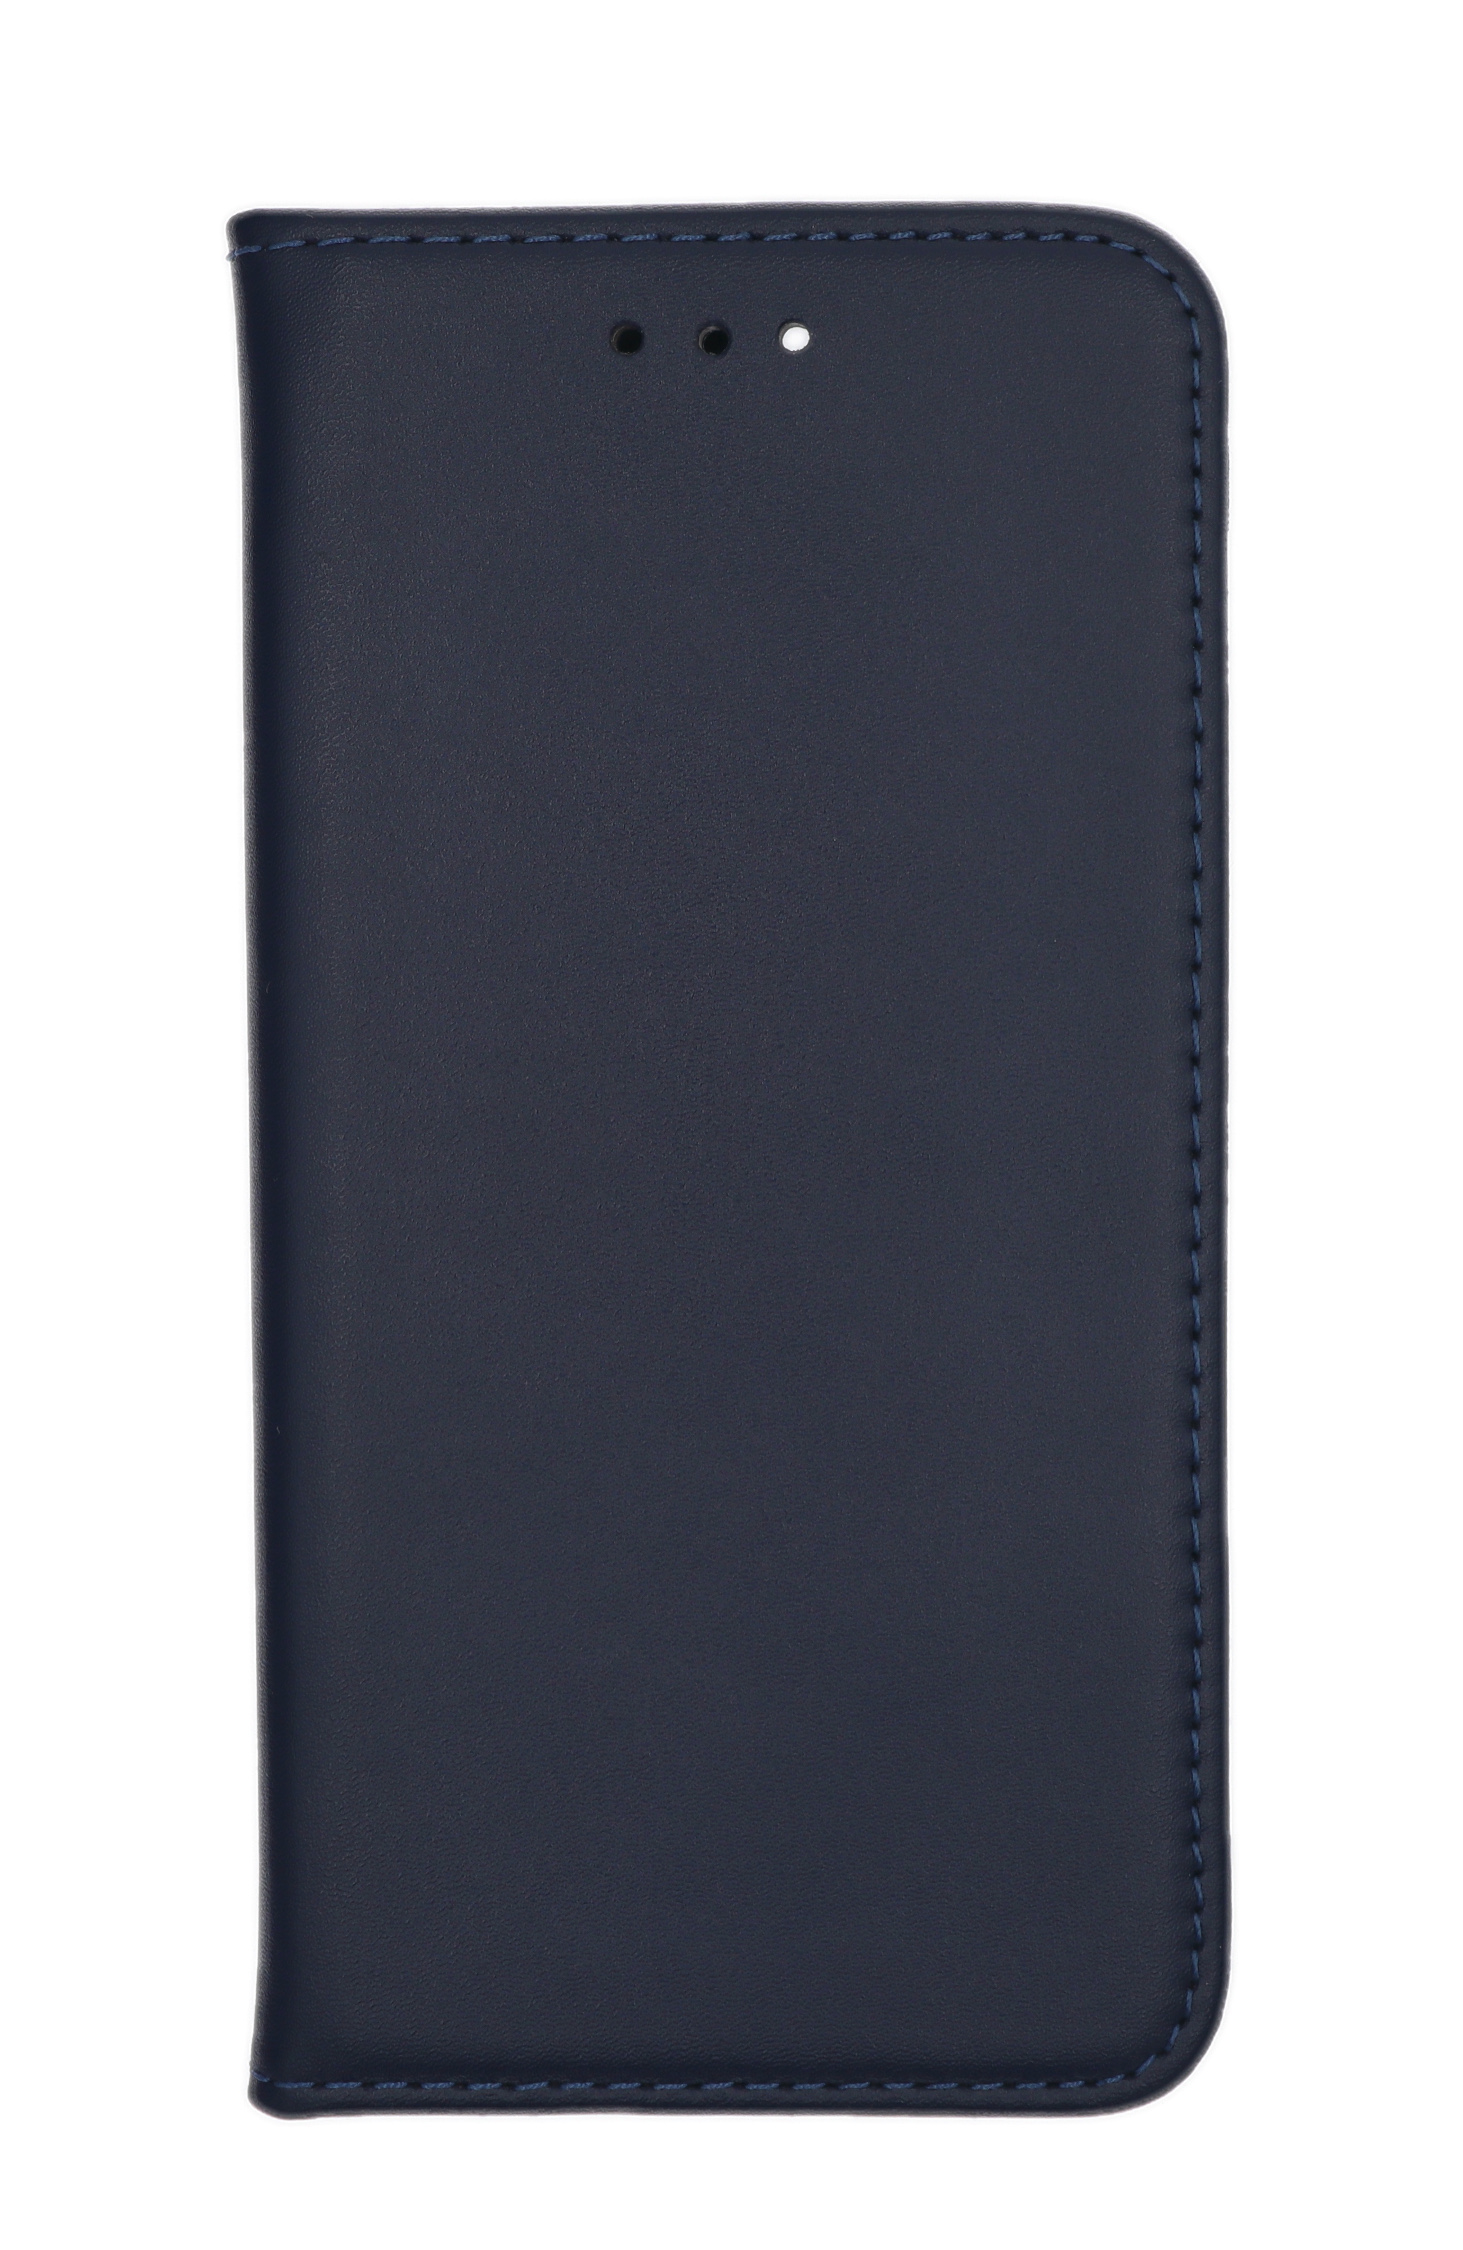 JAMCOVER Echt Leder 4G, A13 A13 Bookcover, Marineblau Galaxy A13, Bookcase, Galaxy Galaxy NE, Samsung